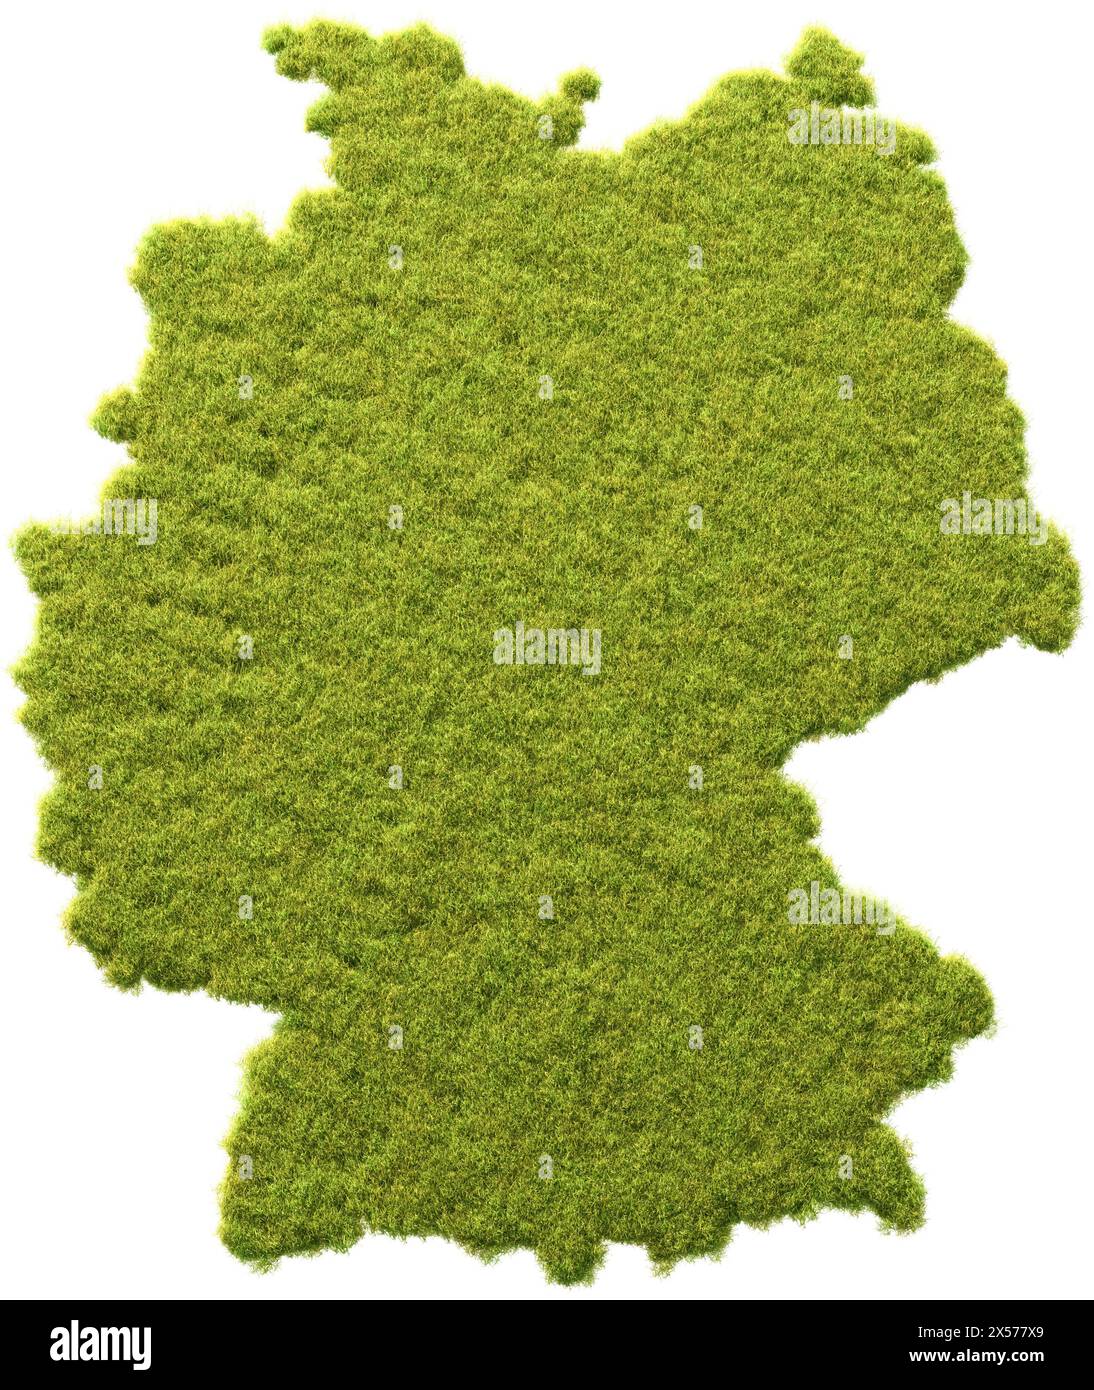 Ökologie in Deutschland Konzept. Rasen in Form von Deutschland. Transparenter Hintergrund. Stockfoto